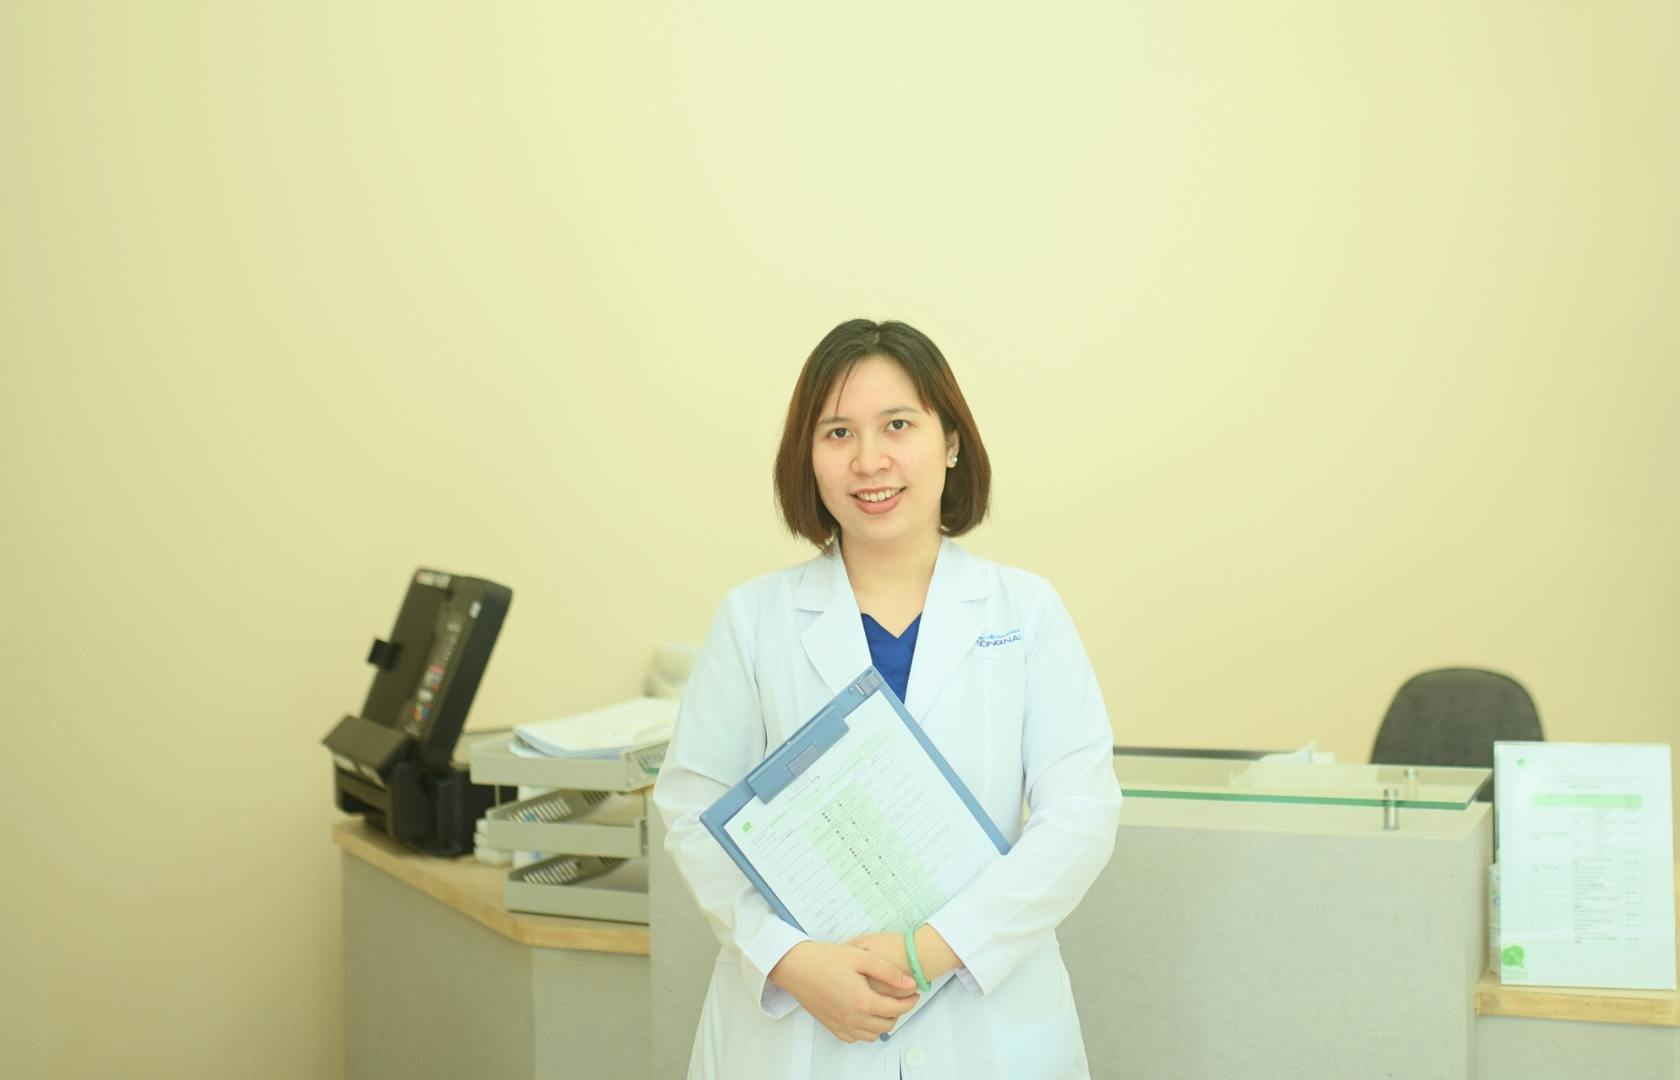 Nữ bác sĩ Nội khoa đến từ Đồng Nai - Hơn cả sự an tâm – luôn đặt bệnh nhân là trung tâm